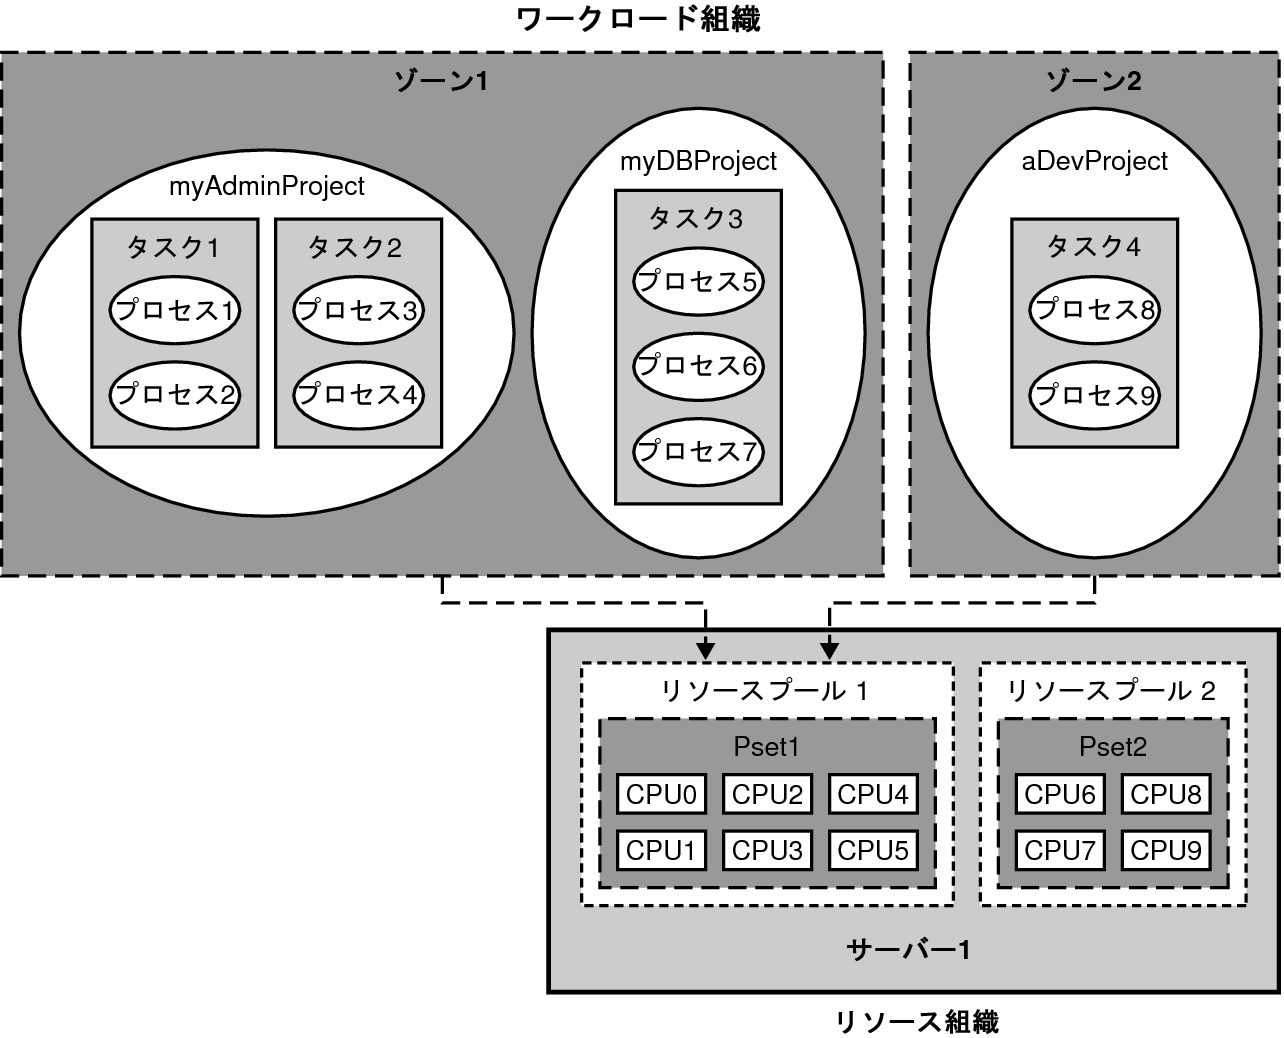 image:図は、作業負荷とリソースをシステム内で整理する方法の例を示しています。